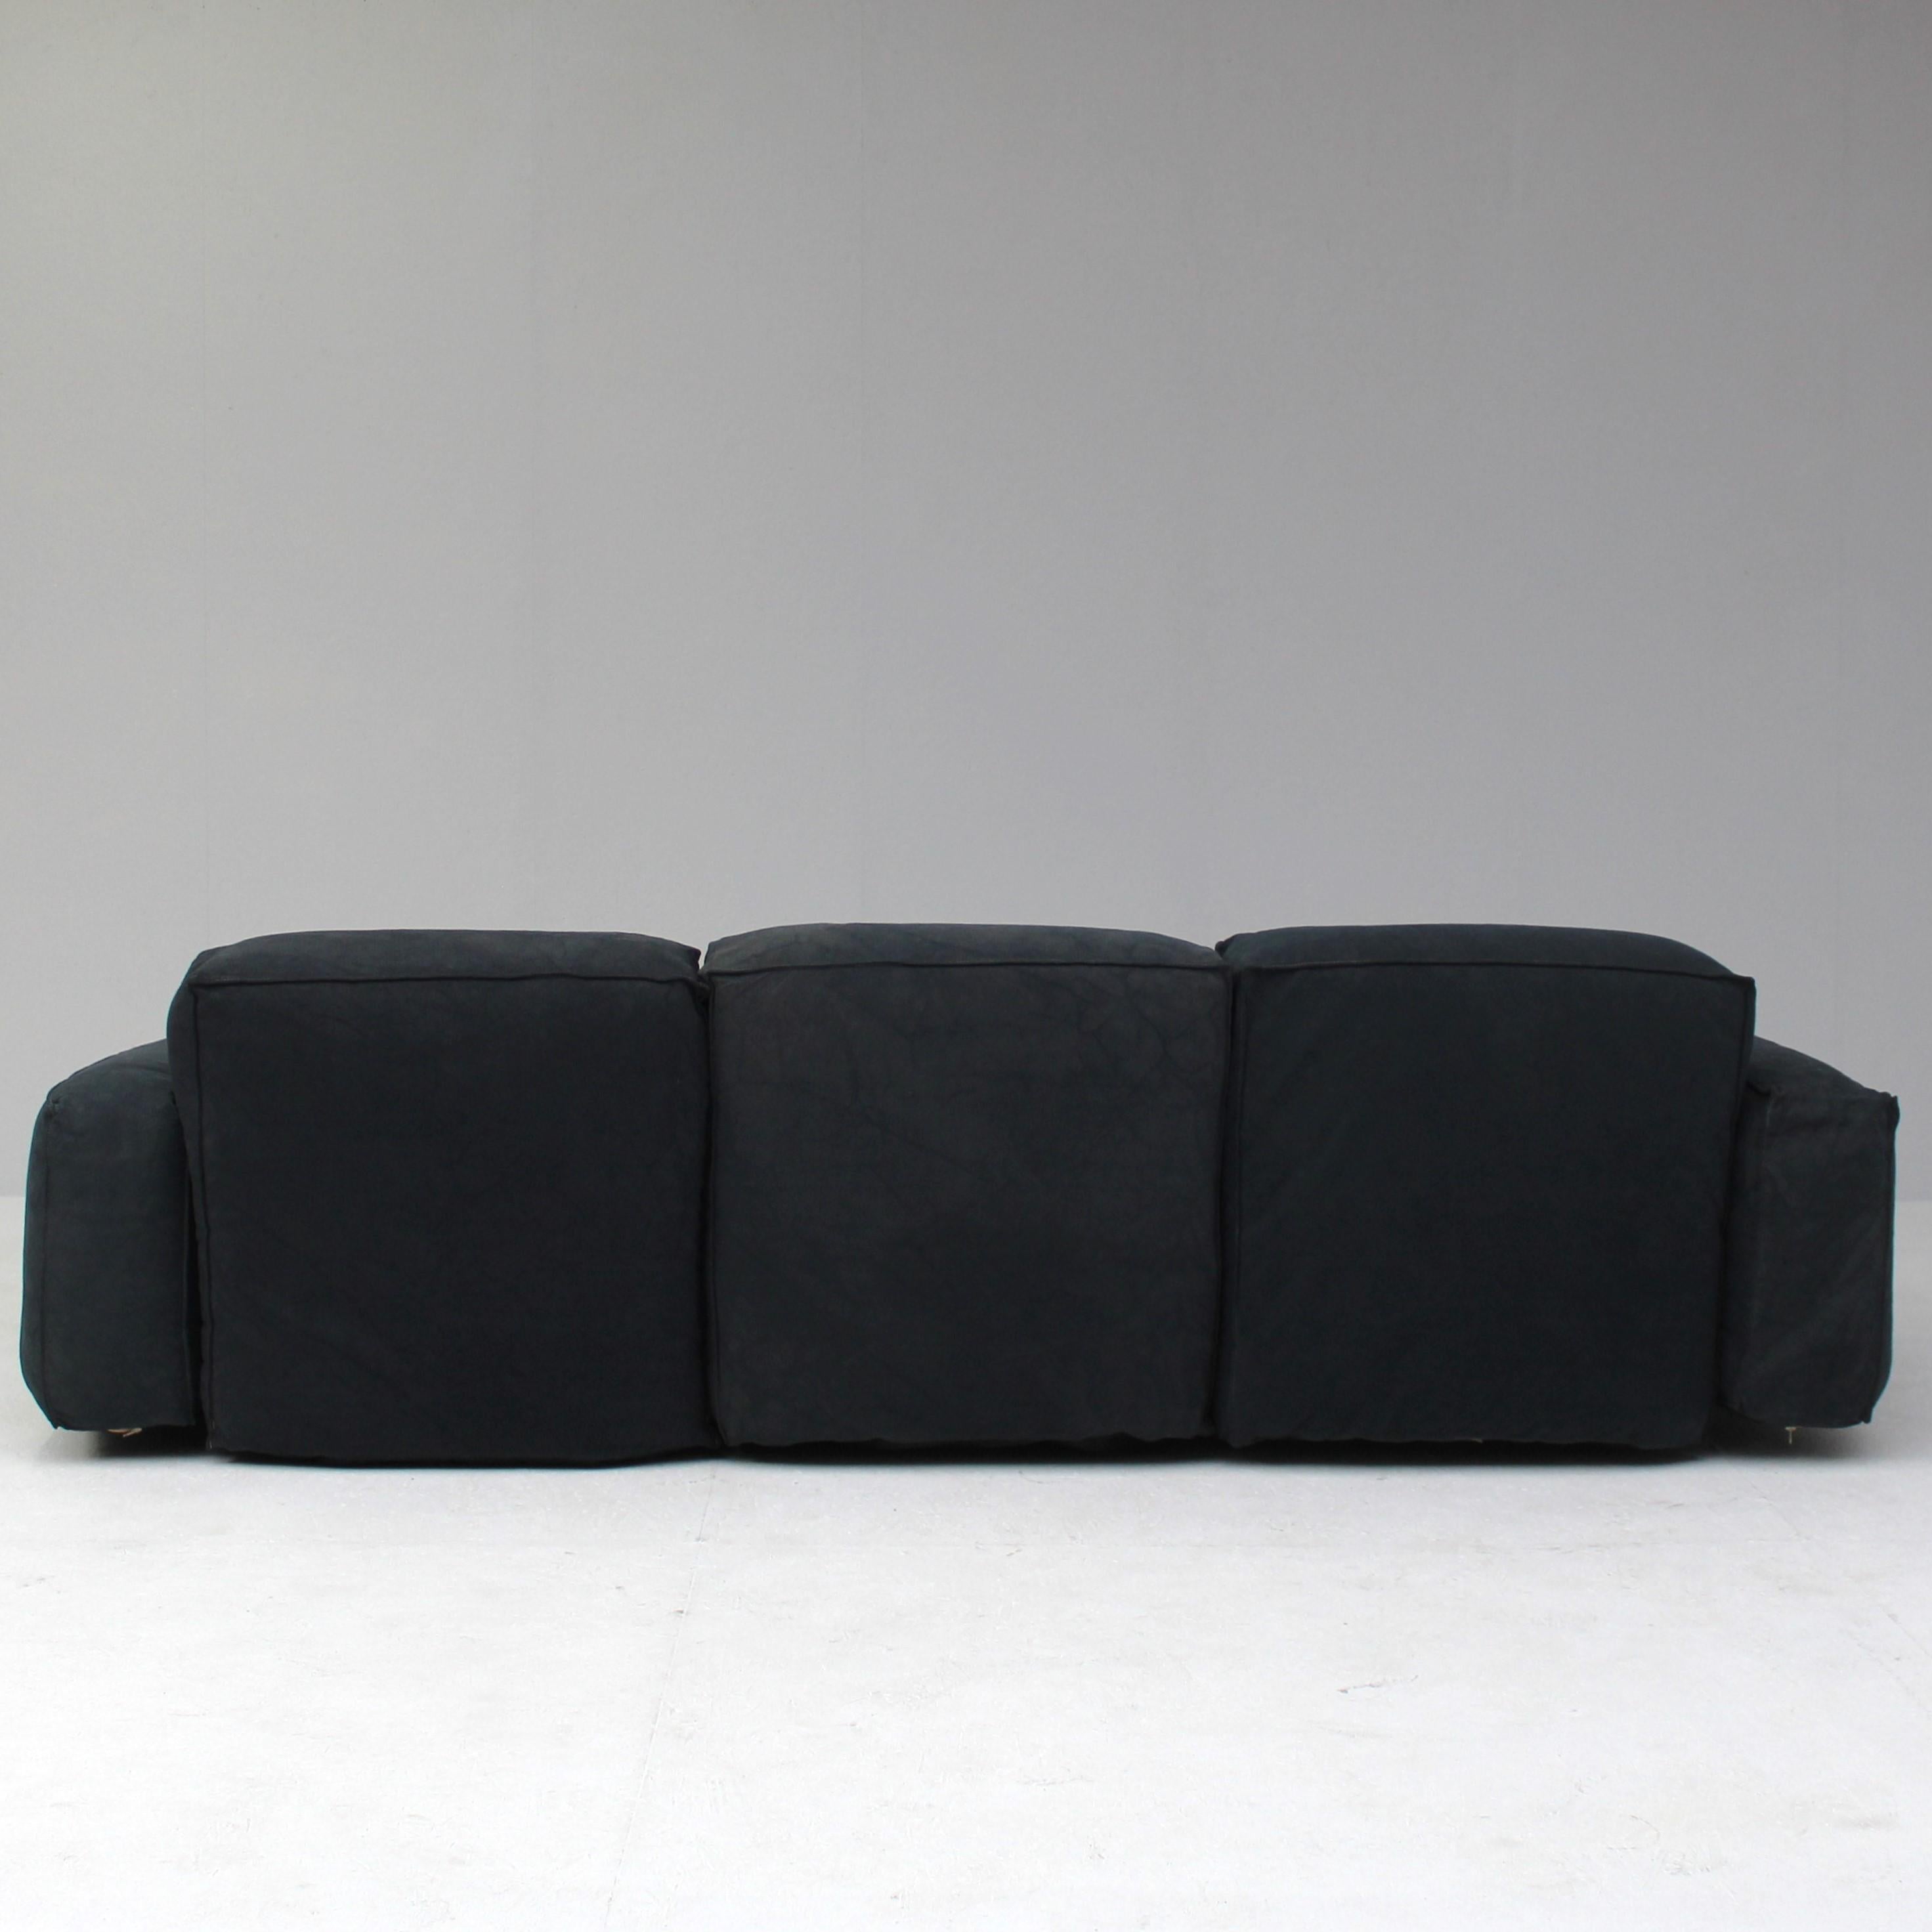 Late 20th Century Marechiaro 3seat sofa by Mario Marenco for Arflex